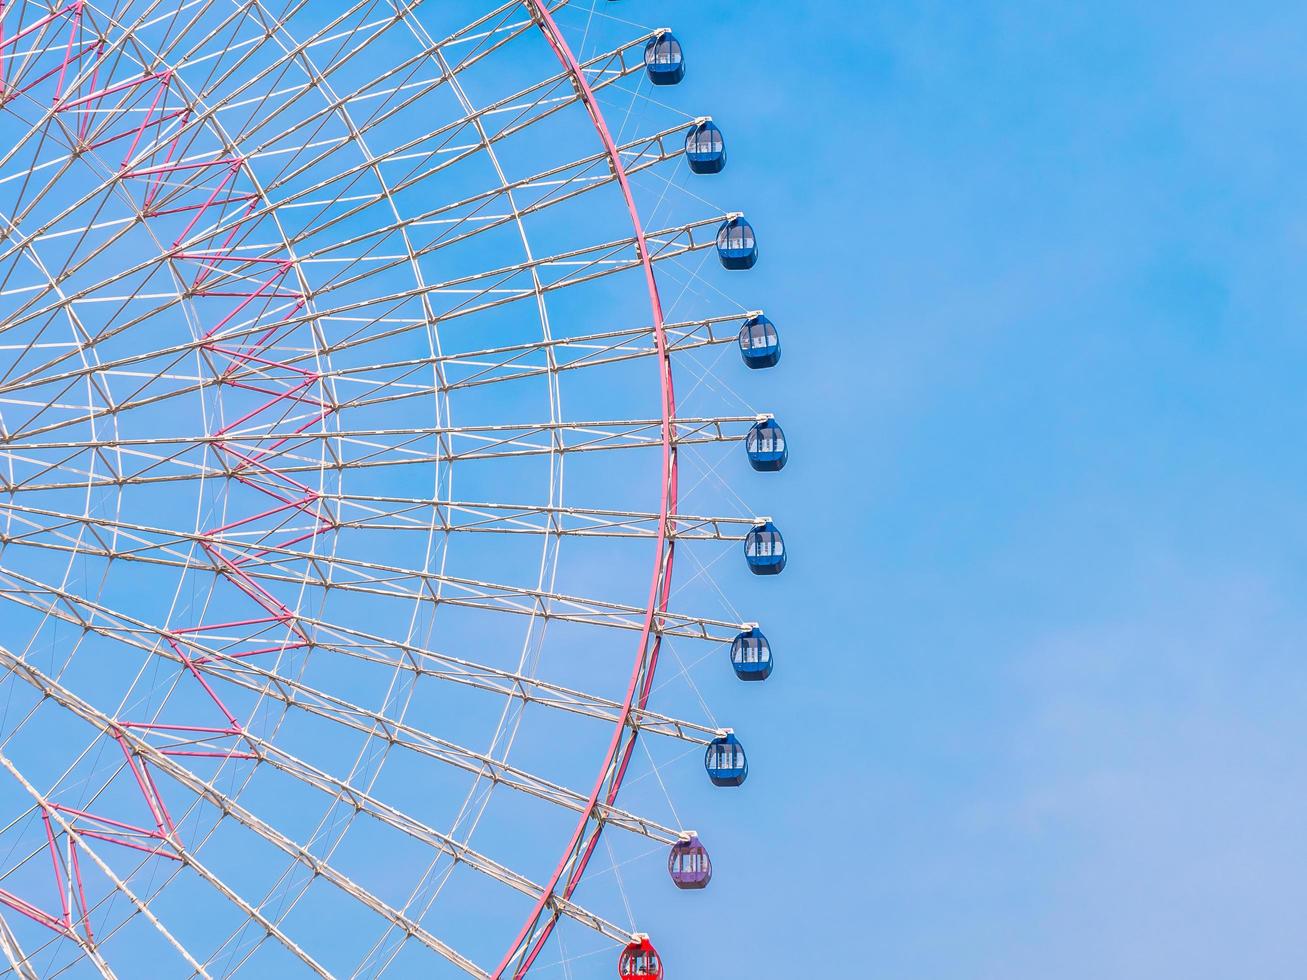 reuzenrad in het park met blauwe hemelachtergrond foto